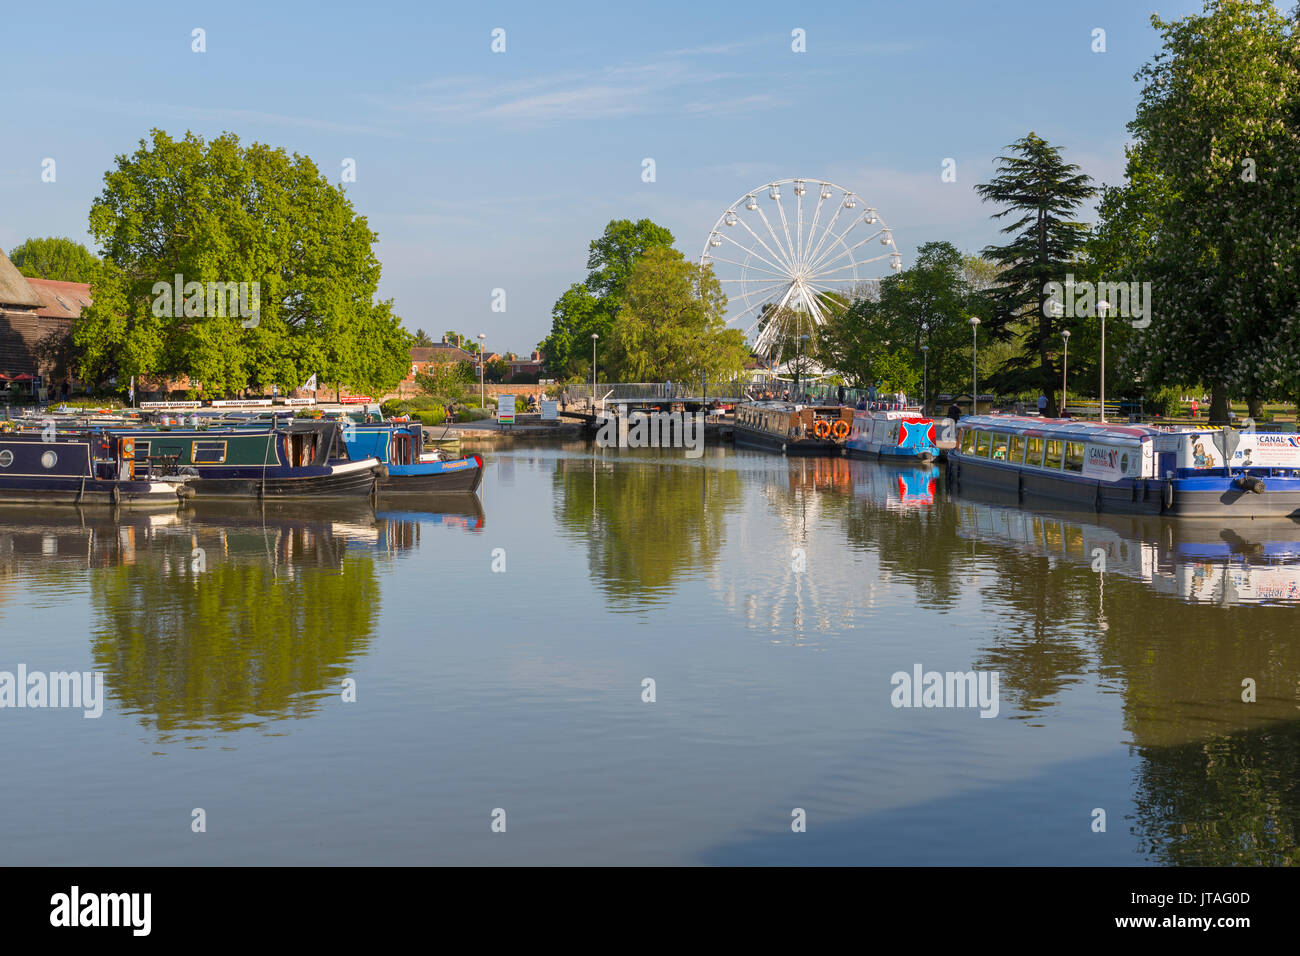 Il fiume Avon lunghe barche e ruota panoramica Ferris, Stratford upon Avon, Warwickshire, Inghilterra, Regno Unito, Europa Foto Stock